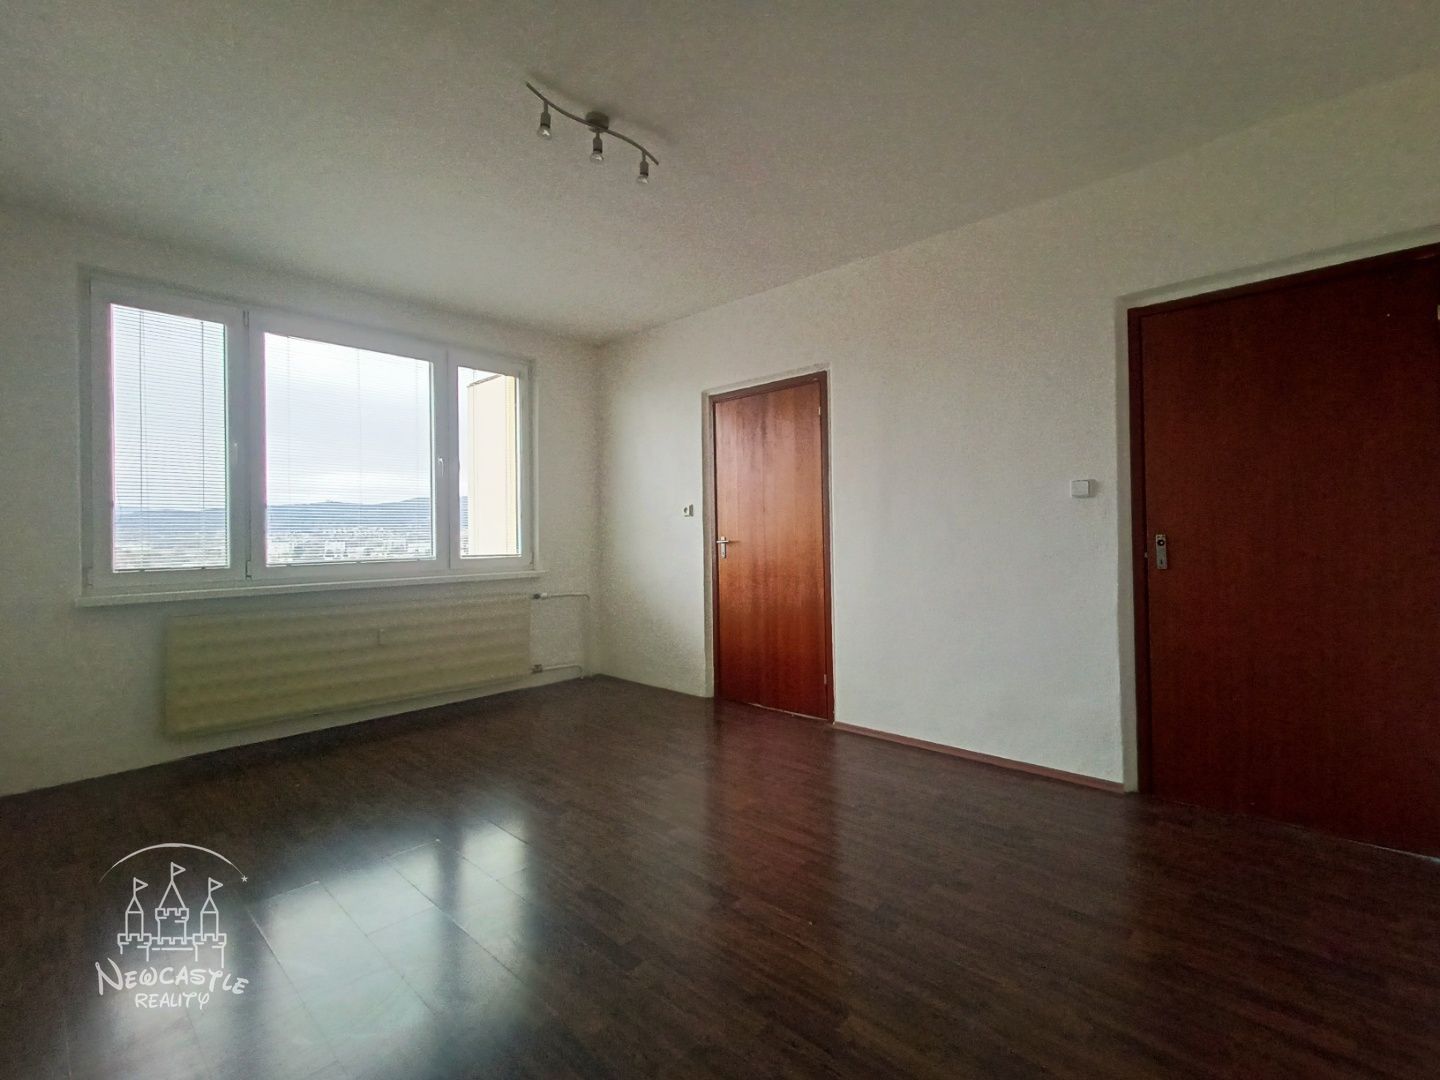 NEWCASTLE⏐NA PREDAJ 2 izbový byt (56m2) v centre Prievidze